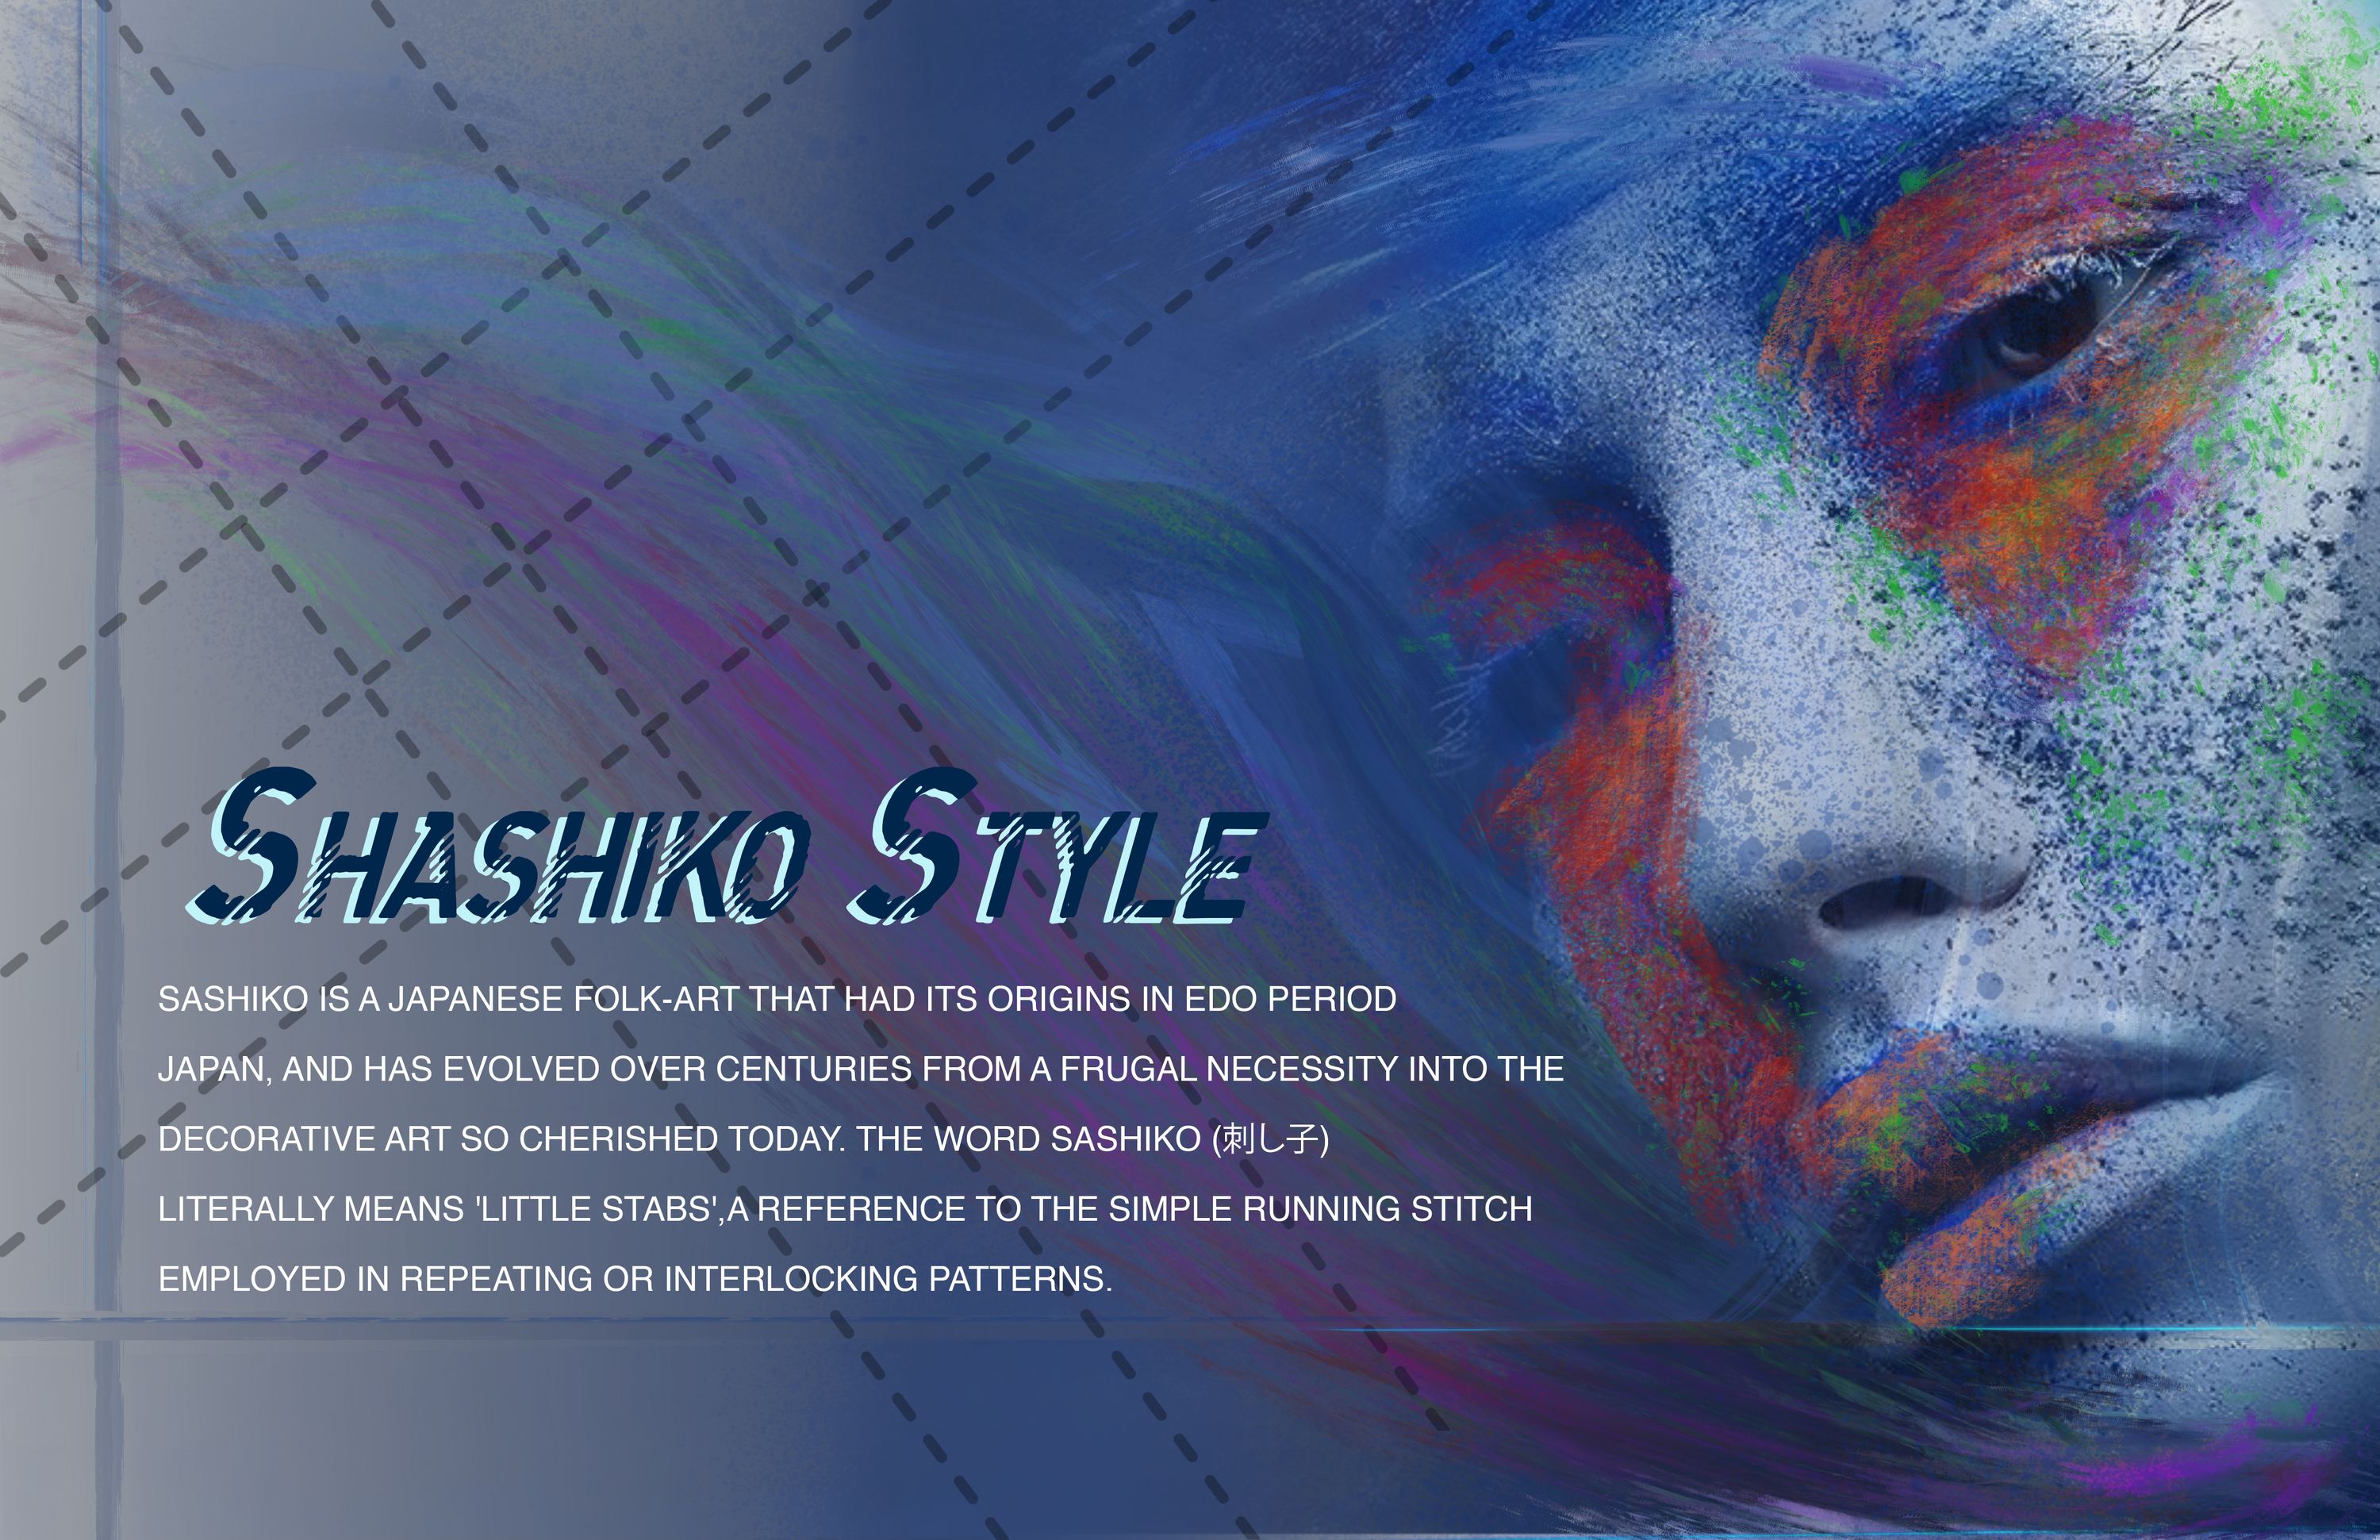 Shashiko Style